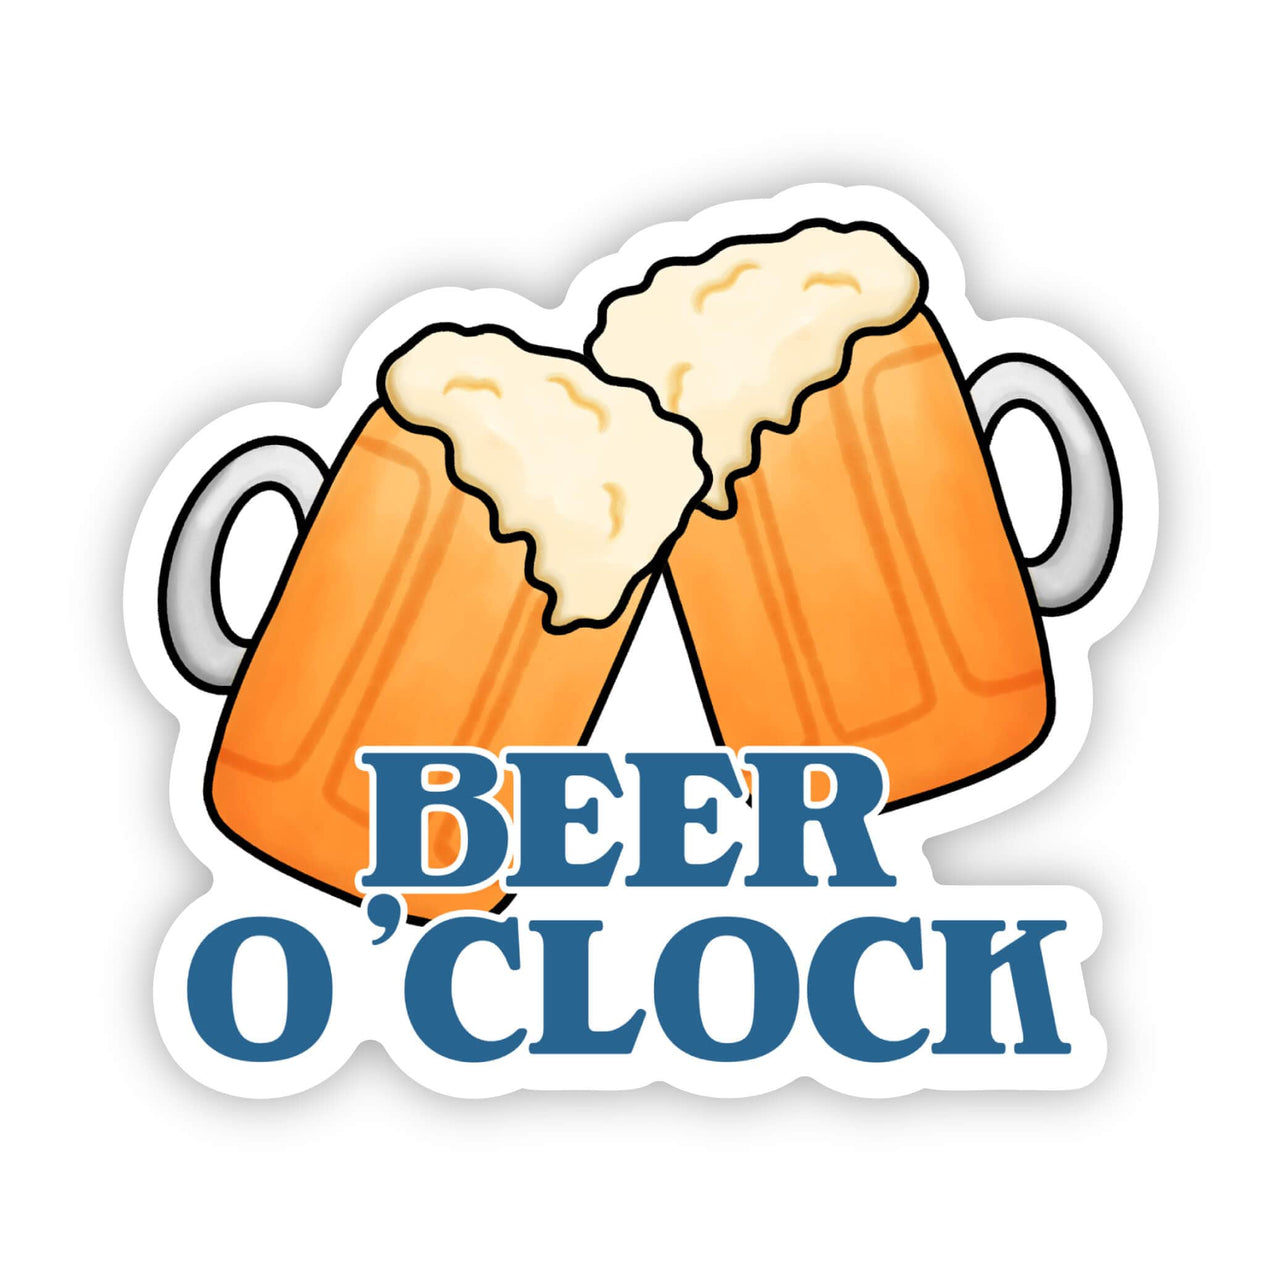 "Beer O'Clock" sticker